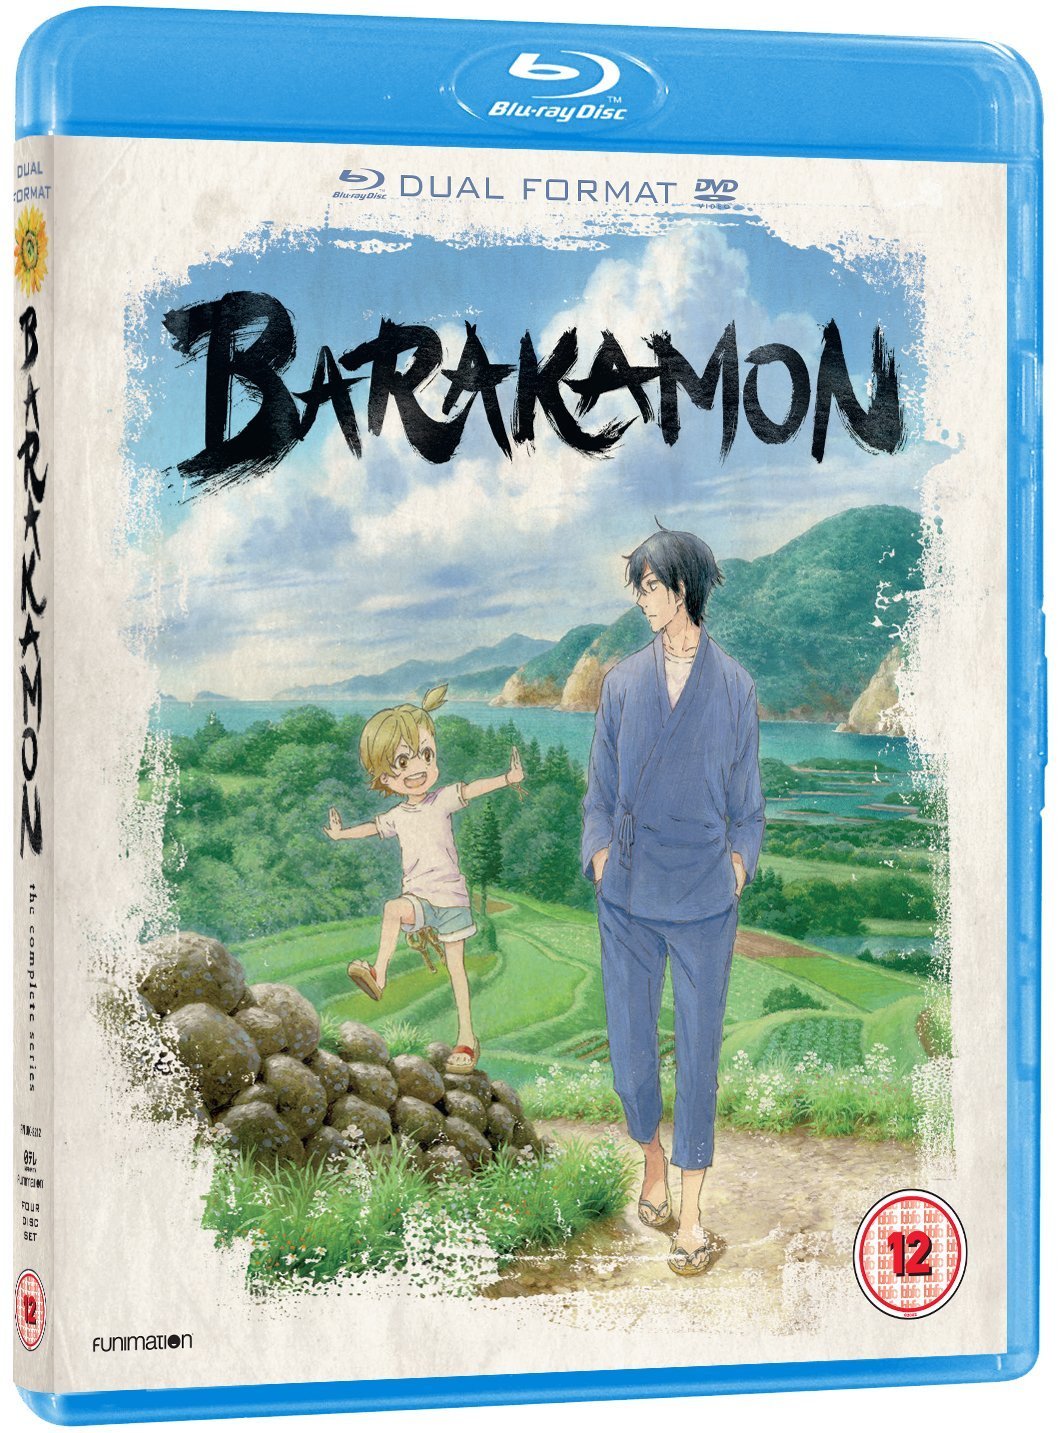 Barakamon – Episodes 2-4 Impressions